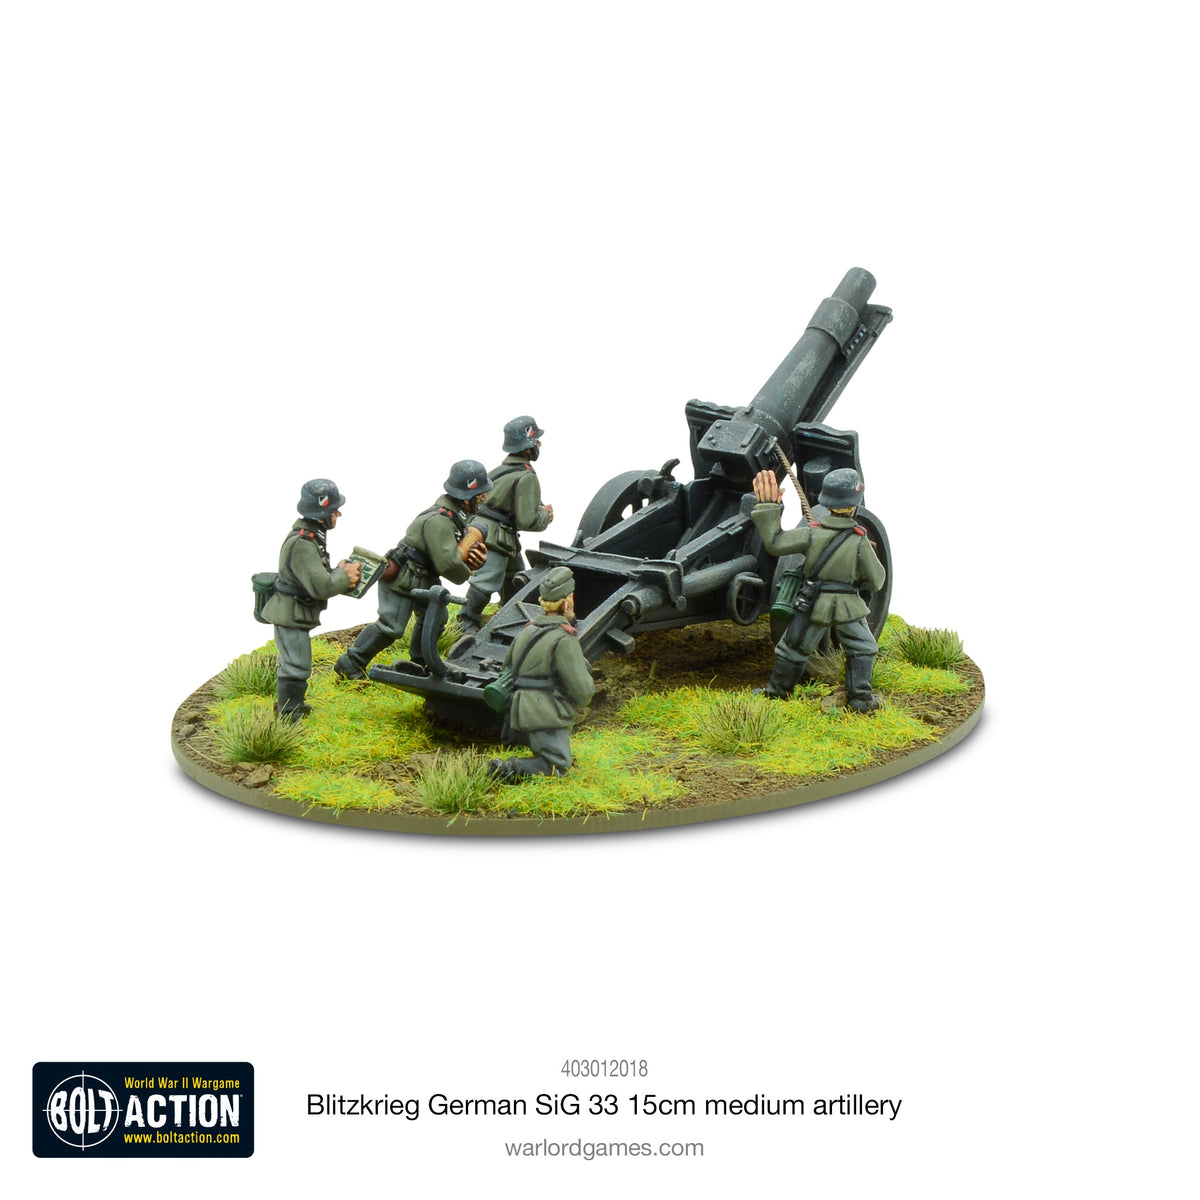 Blitzkreig German SIG 33 15cm heavy howitzer